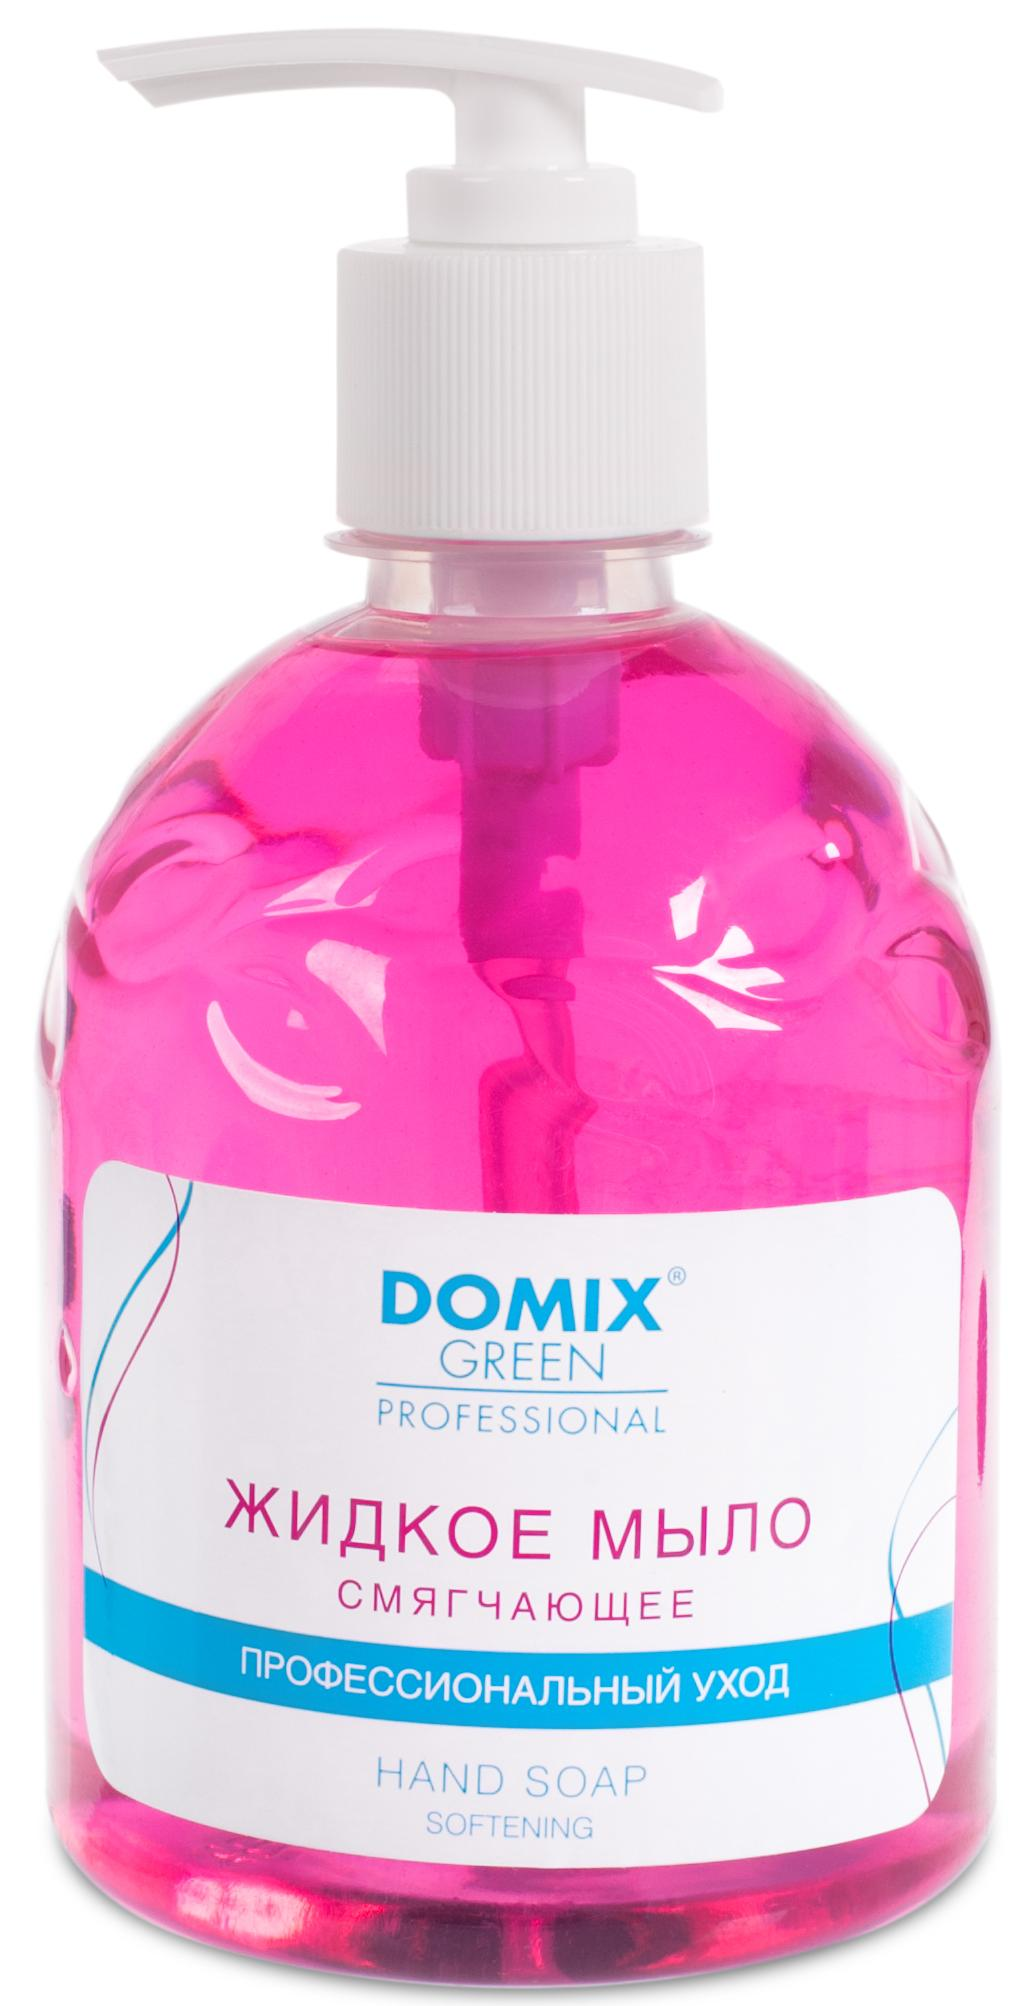 DOMIX Мыло жидкое смягчающее для профессионального ухода / DGP 500 мл deep fresh жидкое мыло пенка для мытья рук diamond emerald